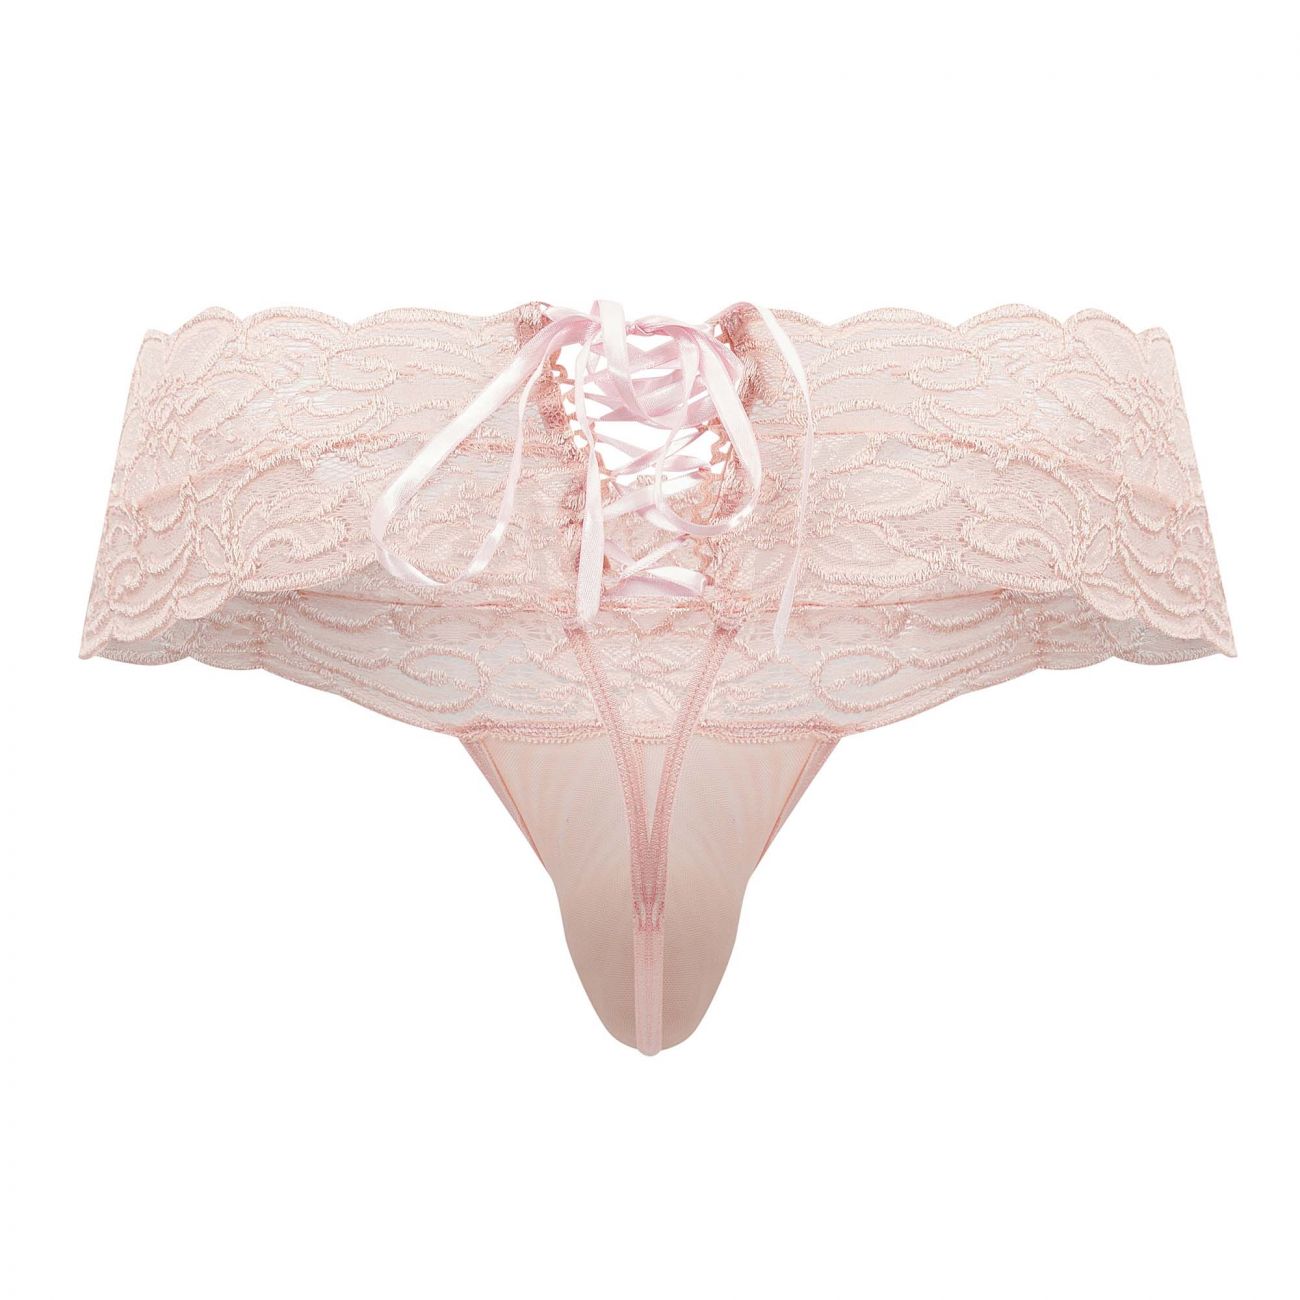 CandyMan Lace Thongs